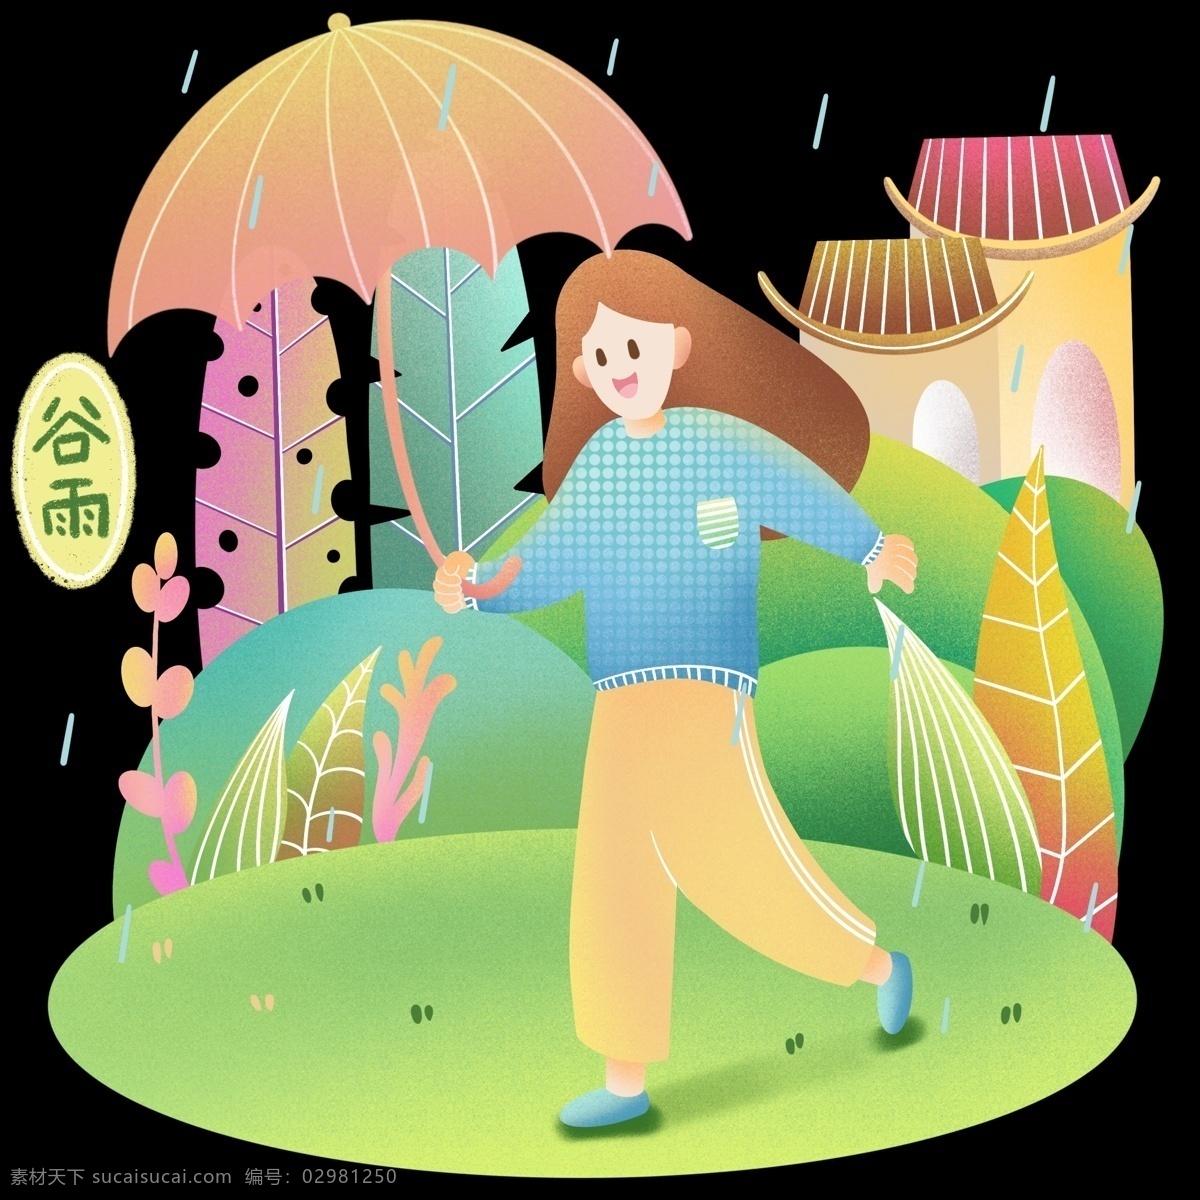 谷雨 玩耍 卡通 插画 漂亮的女孩 卡通插画 谷雨插画 二十四节气 谷雨的节日 节气 绿色的植物